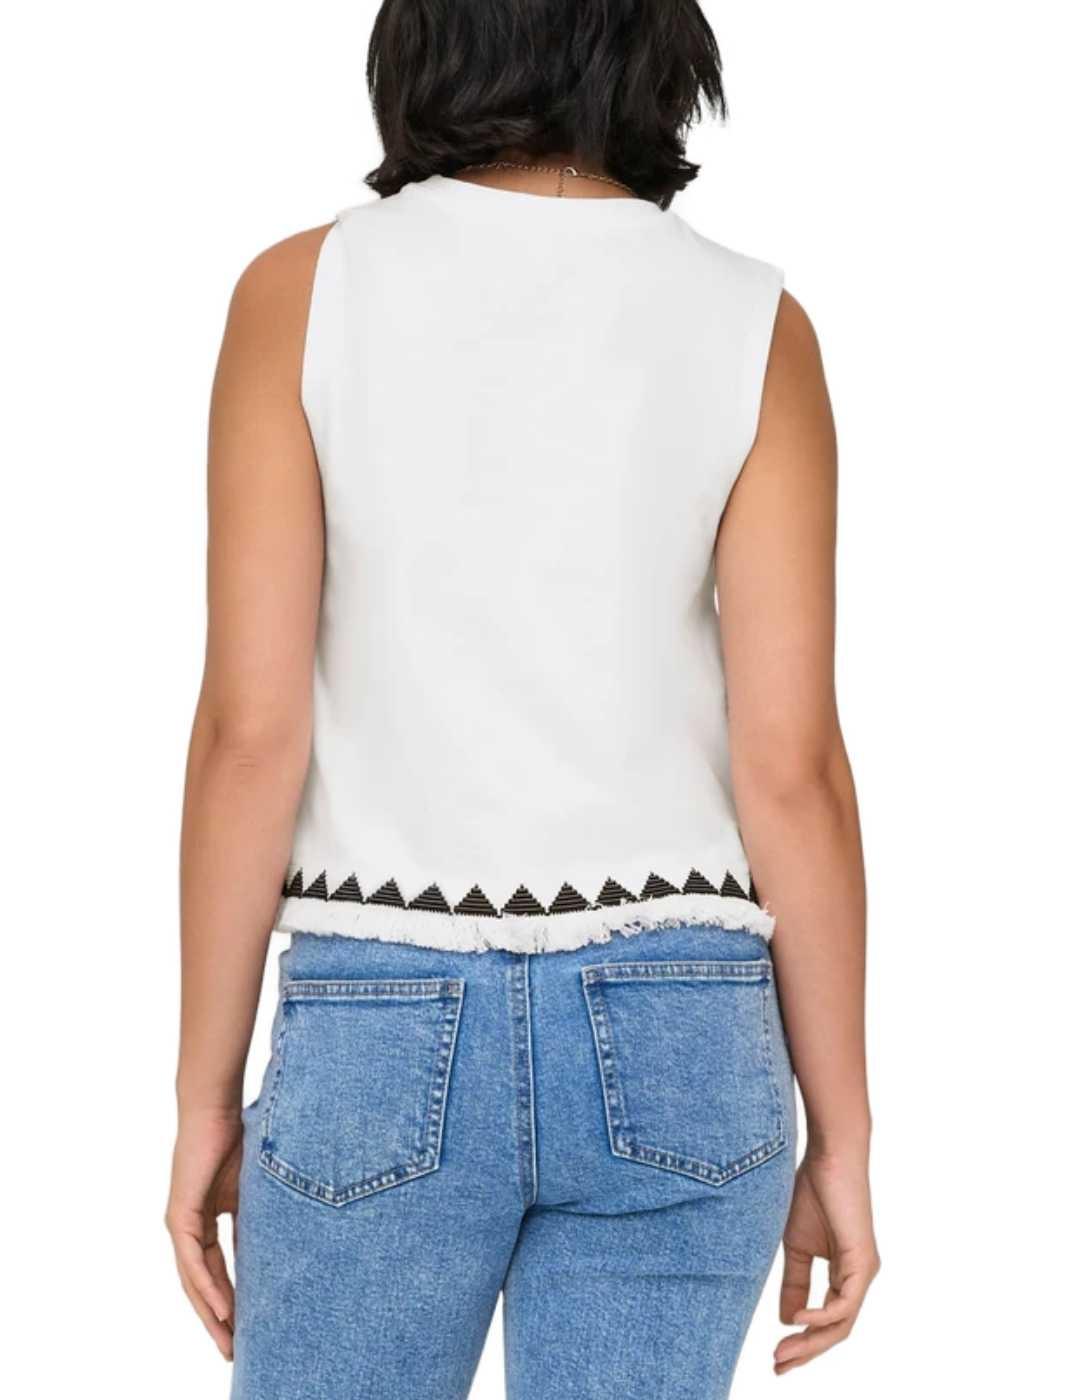 Camiseta Only Liva blanco manga sisa bordado para mujer